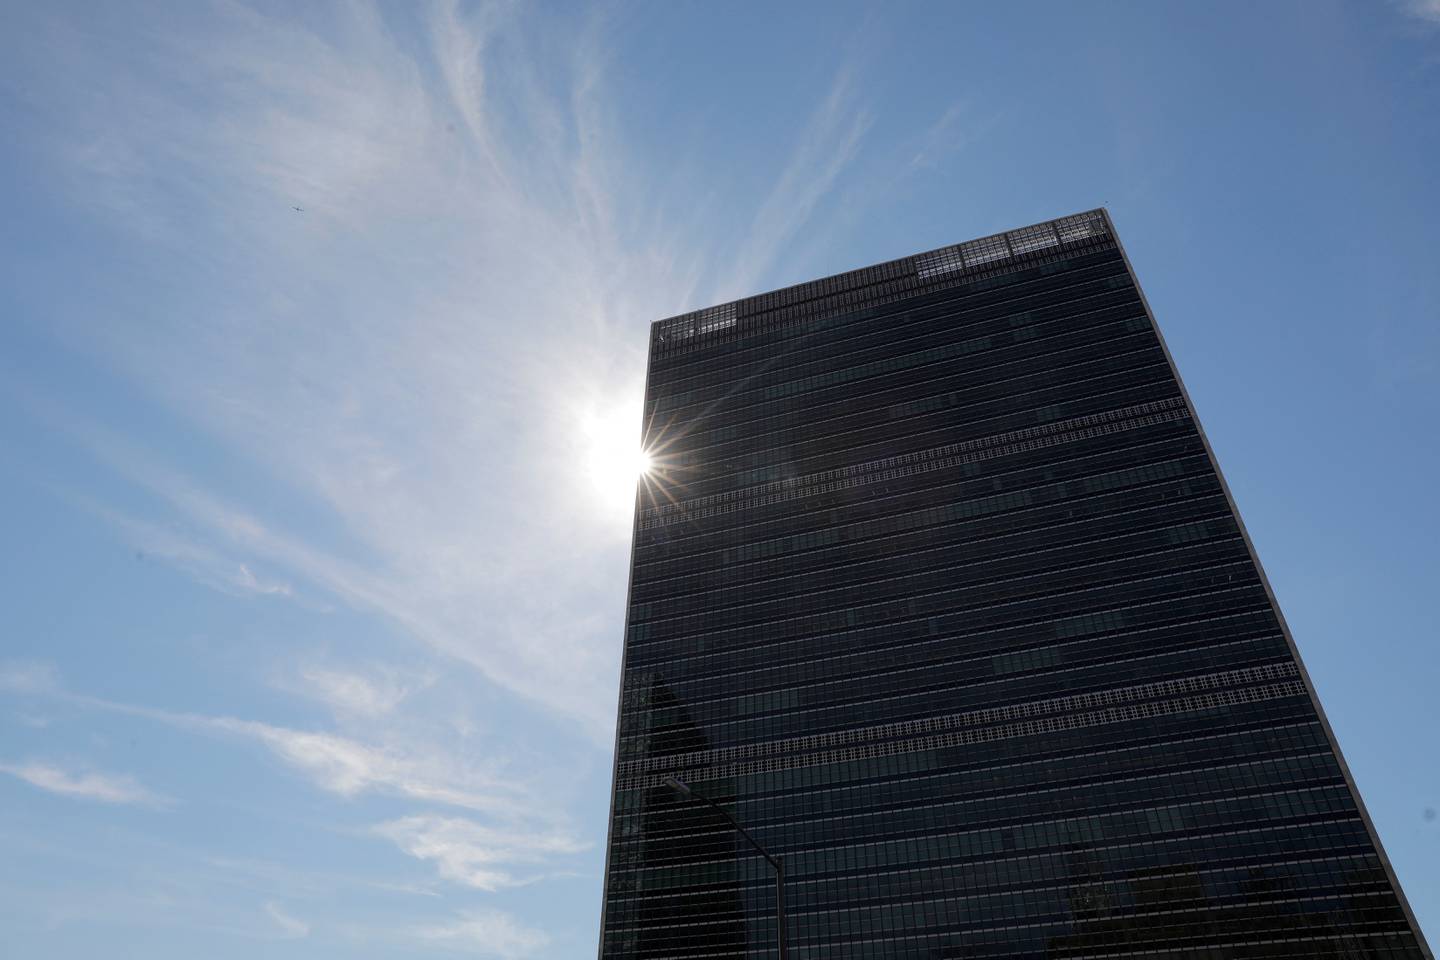 FOTO DE ARCHIVO: Edificio de la sede de las Naciones Unidas, en la ciudad de Nueva York, Nueva York, Estados Unidos, 18 de junio de 2021. REUTERS/Andrew Kelly/File Photo